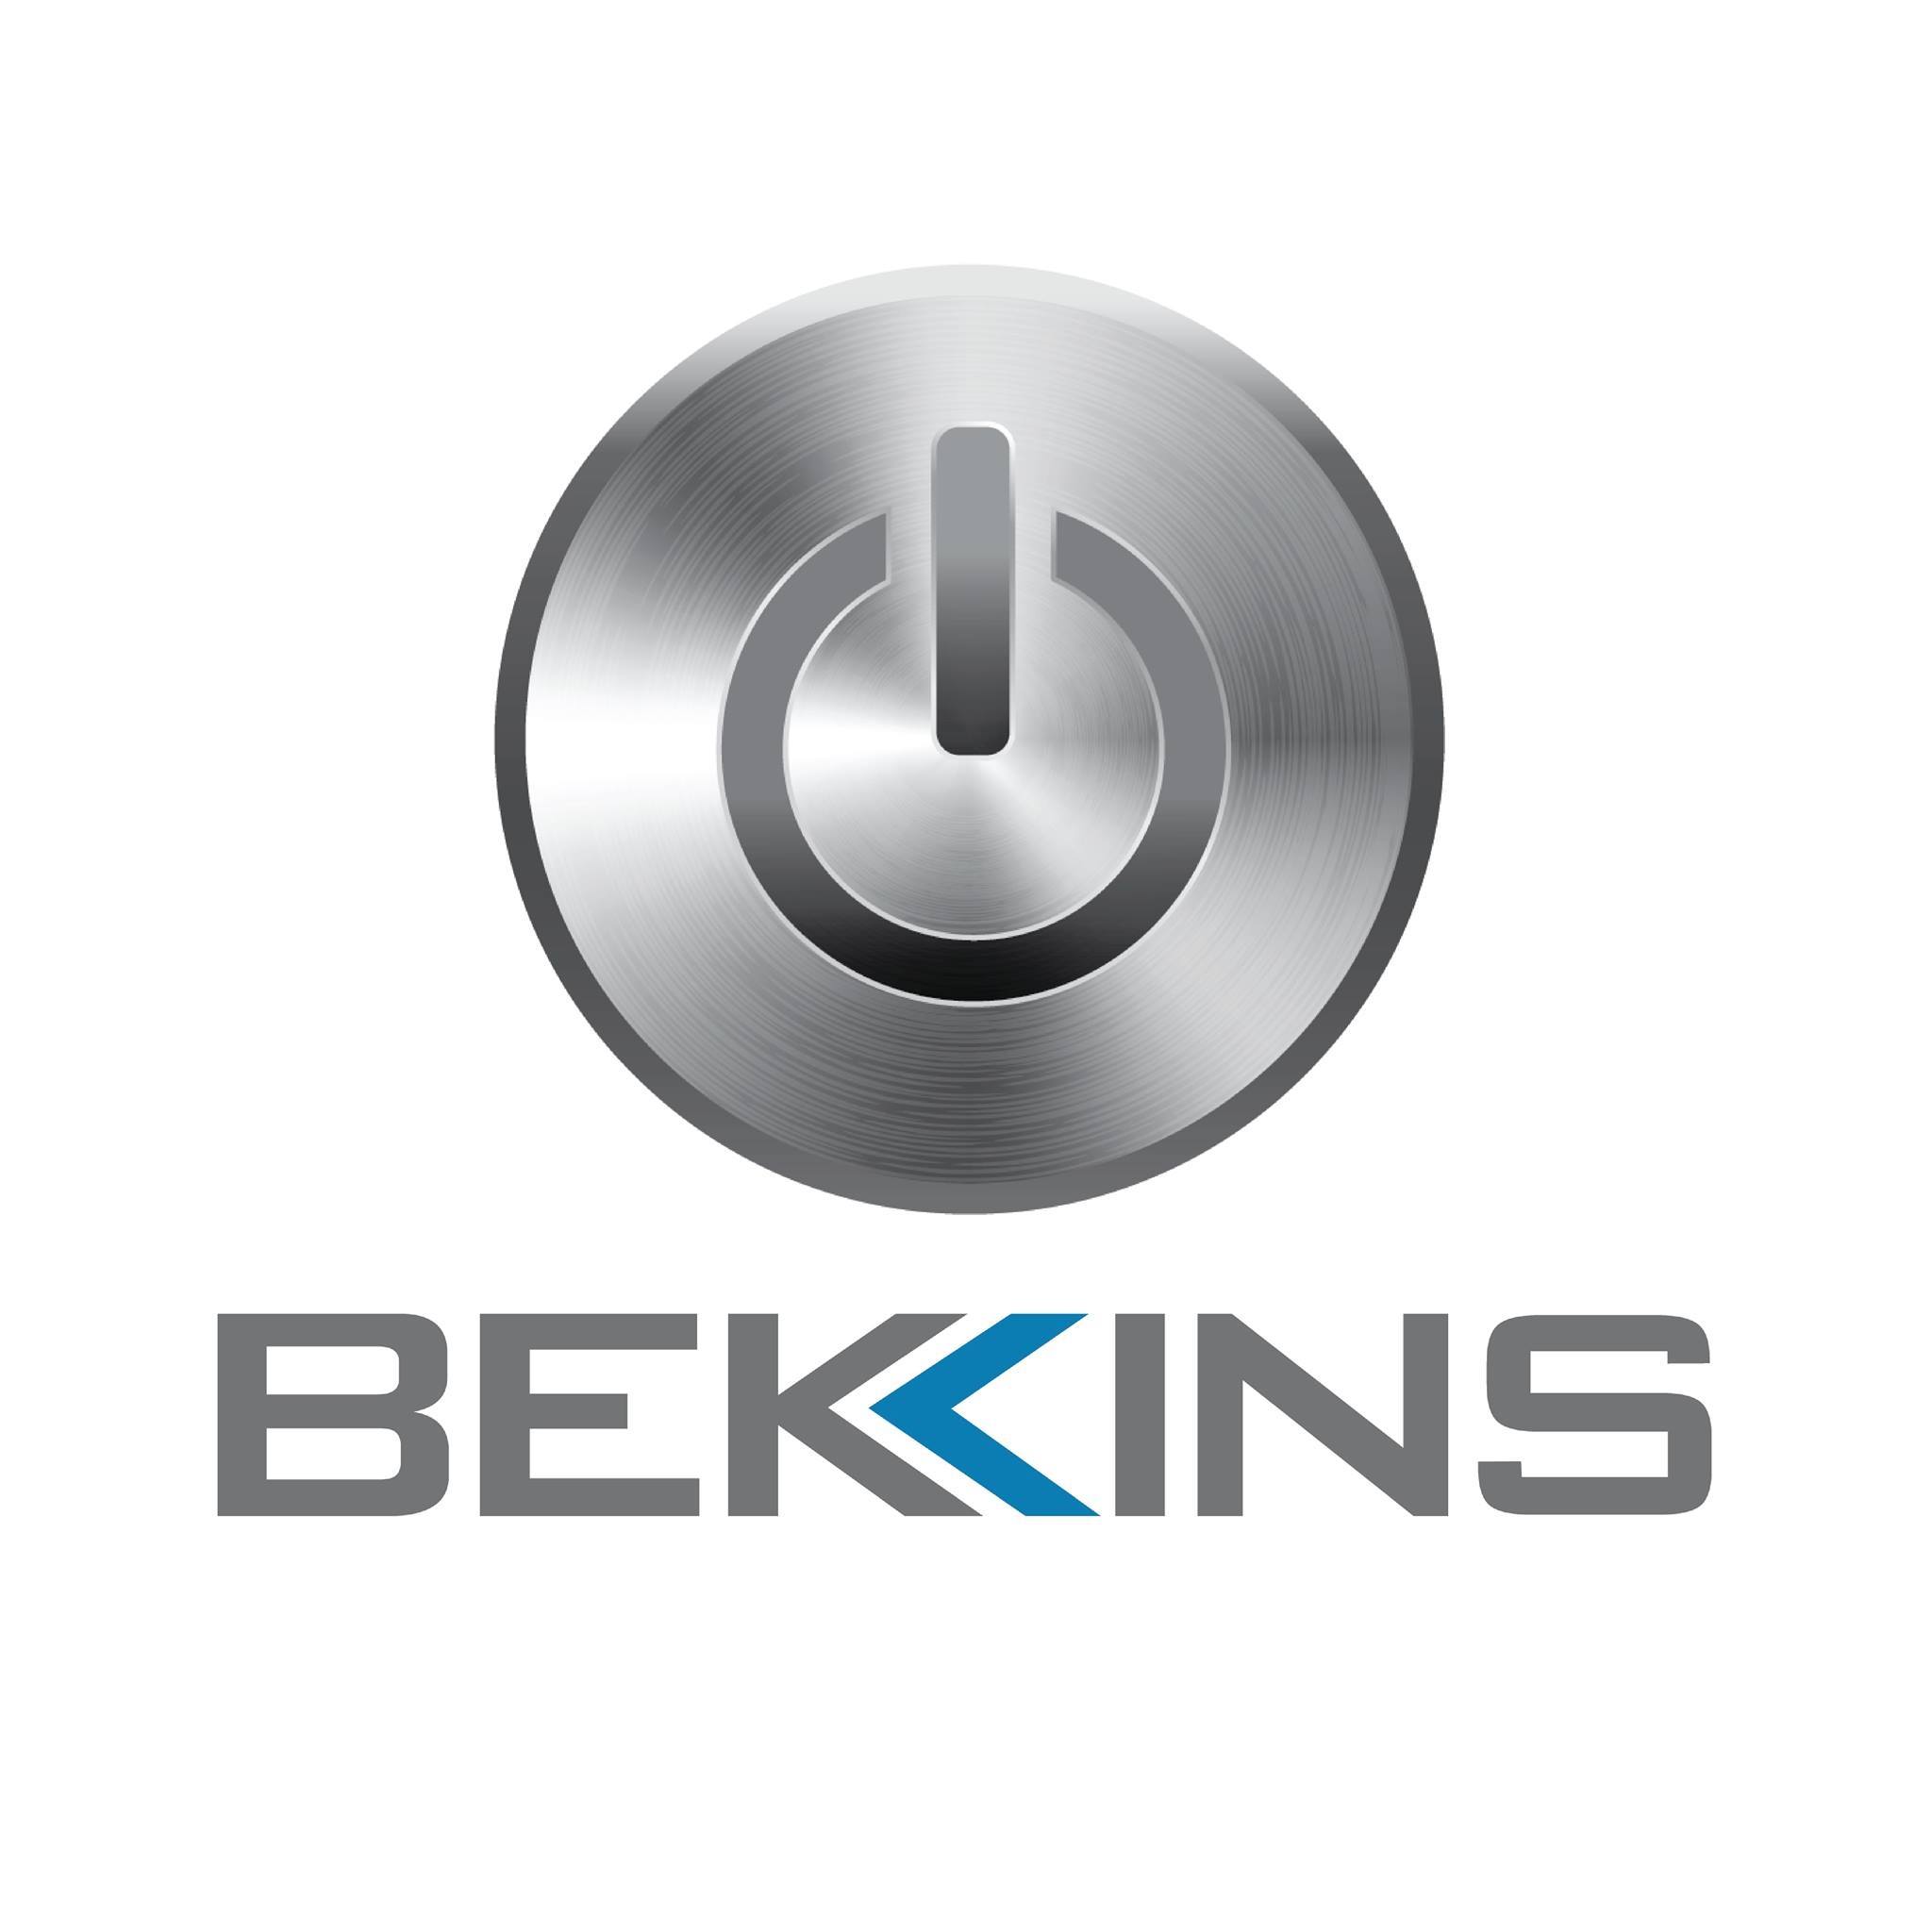 Bekins Appliance